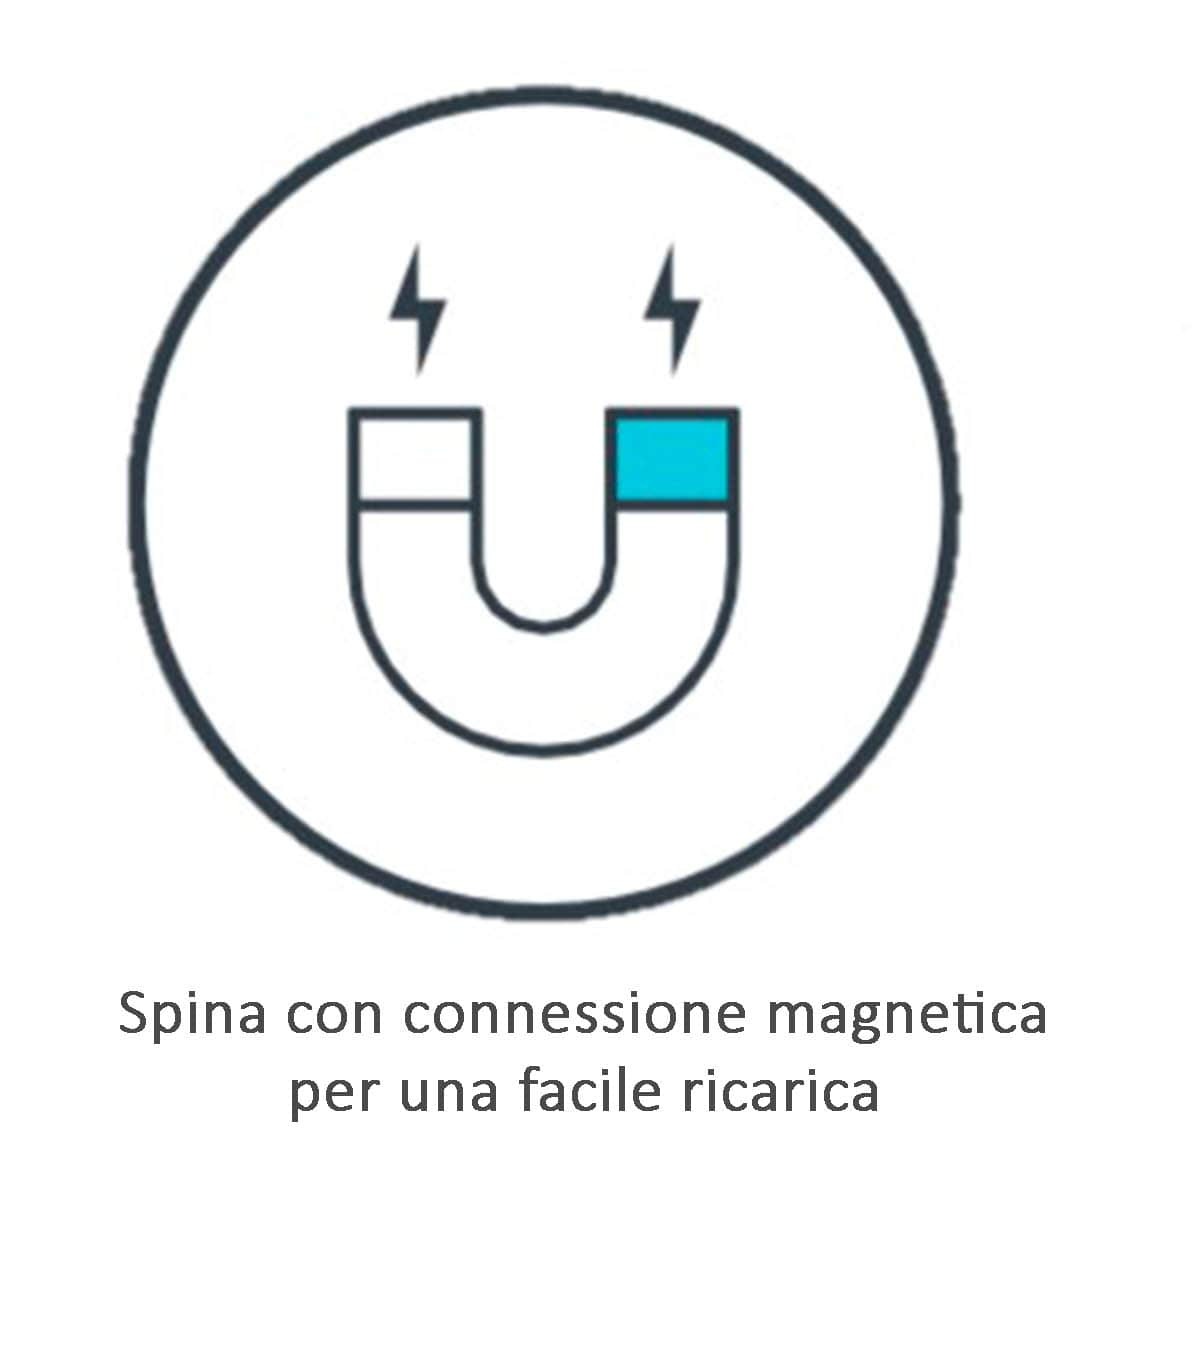 Conexión magnética